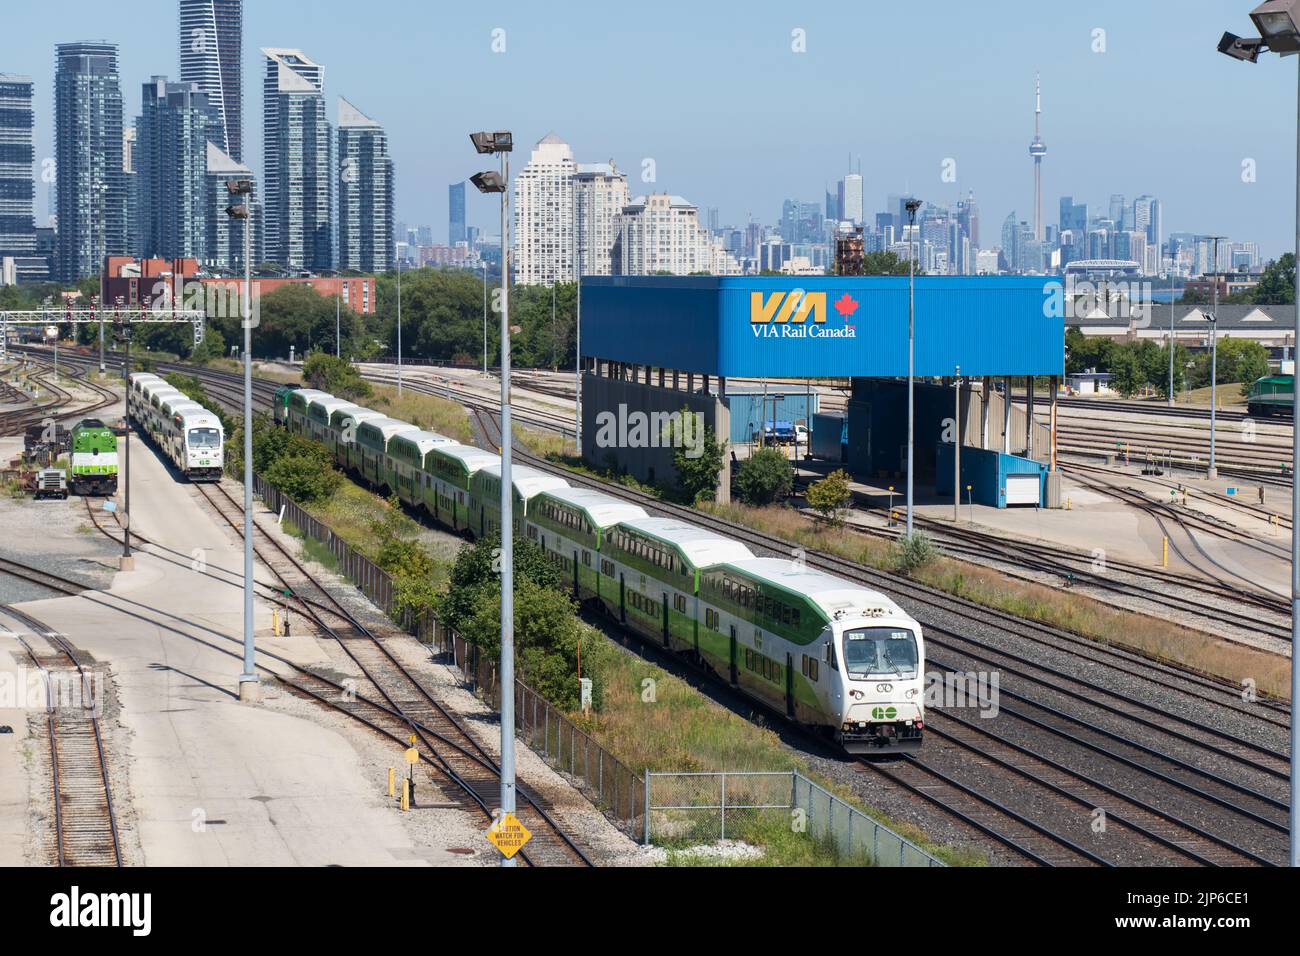 Un treno GO Transit passa attraverso una stazione ferroviaria alla periferia di Toronto, lo skyline della città è visto in lontanità. Foto Stock